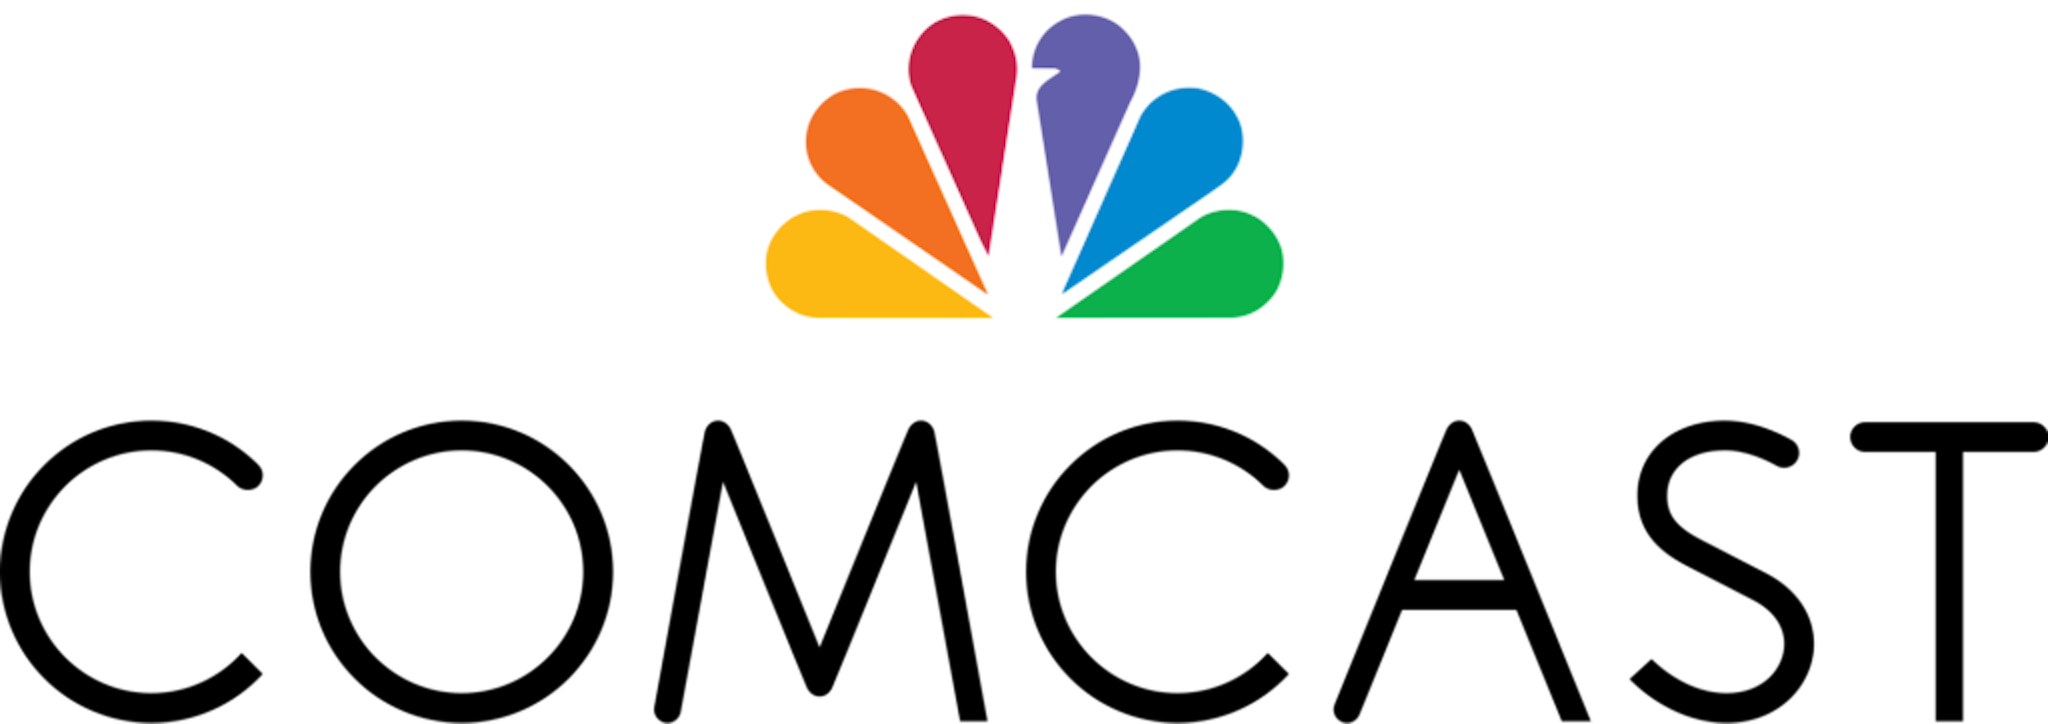 2000px-Comcast Logo.svg-1024x362-1024x362